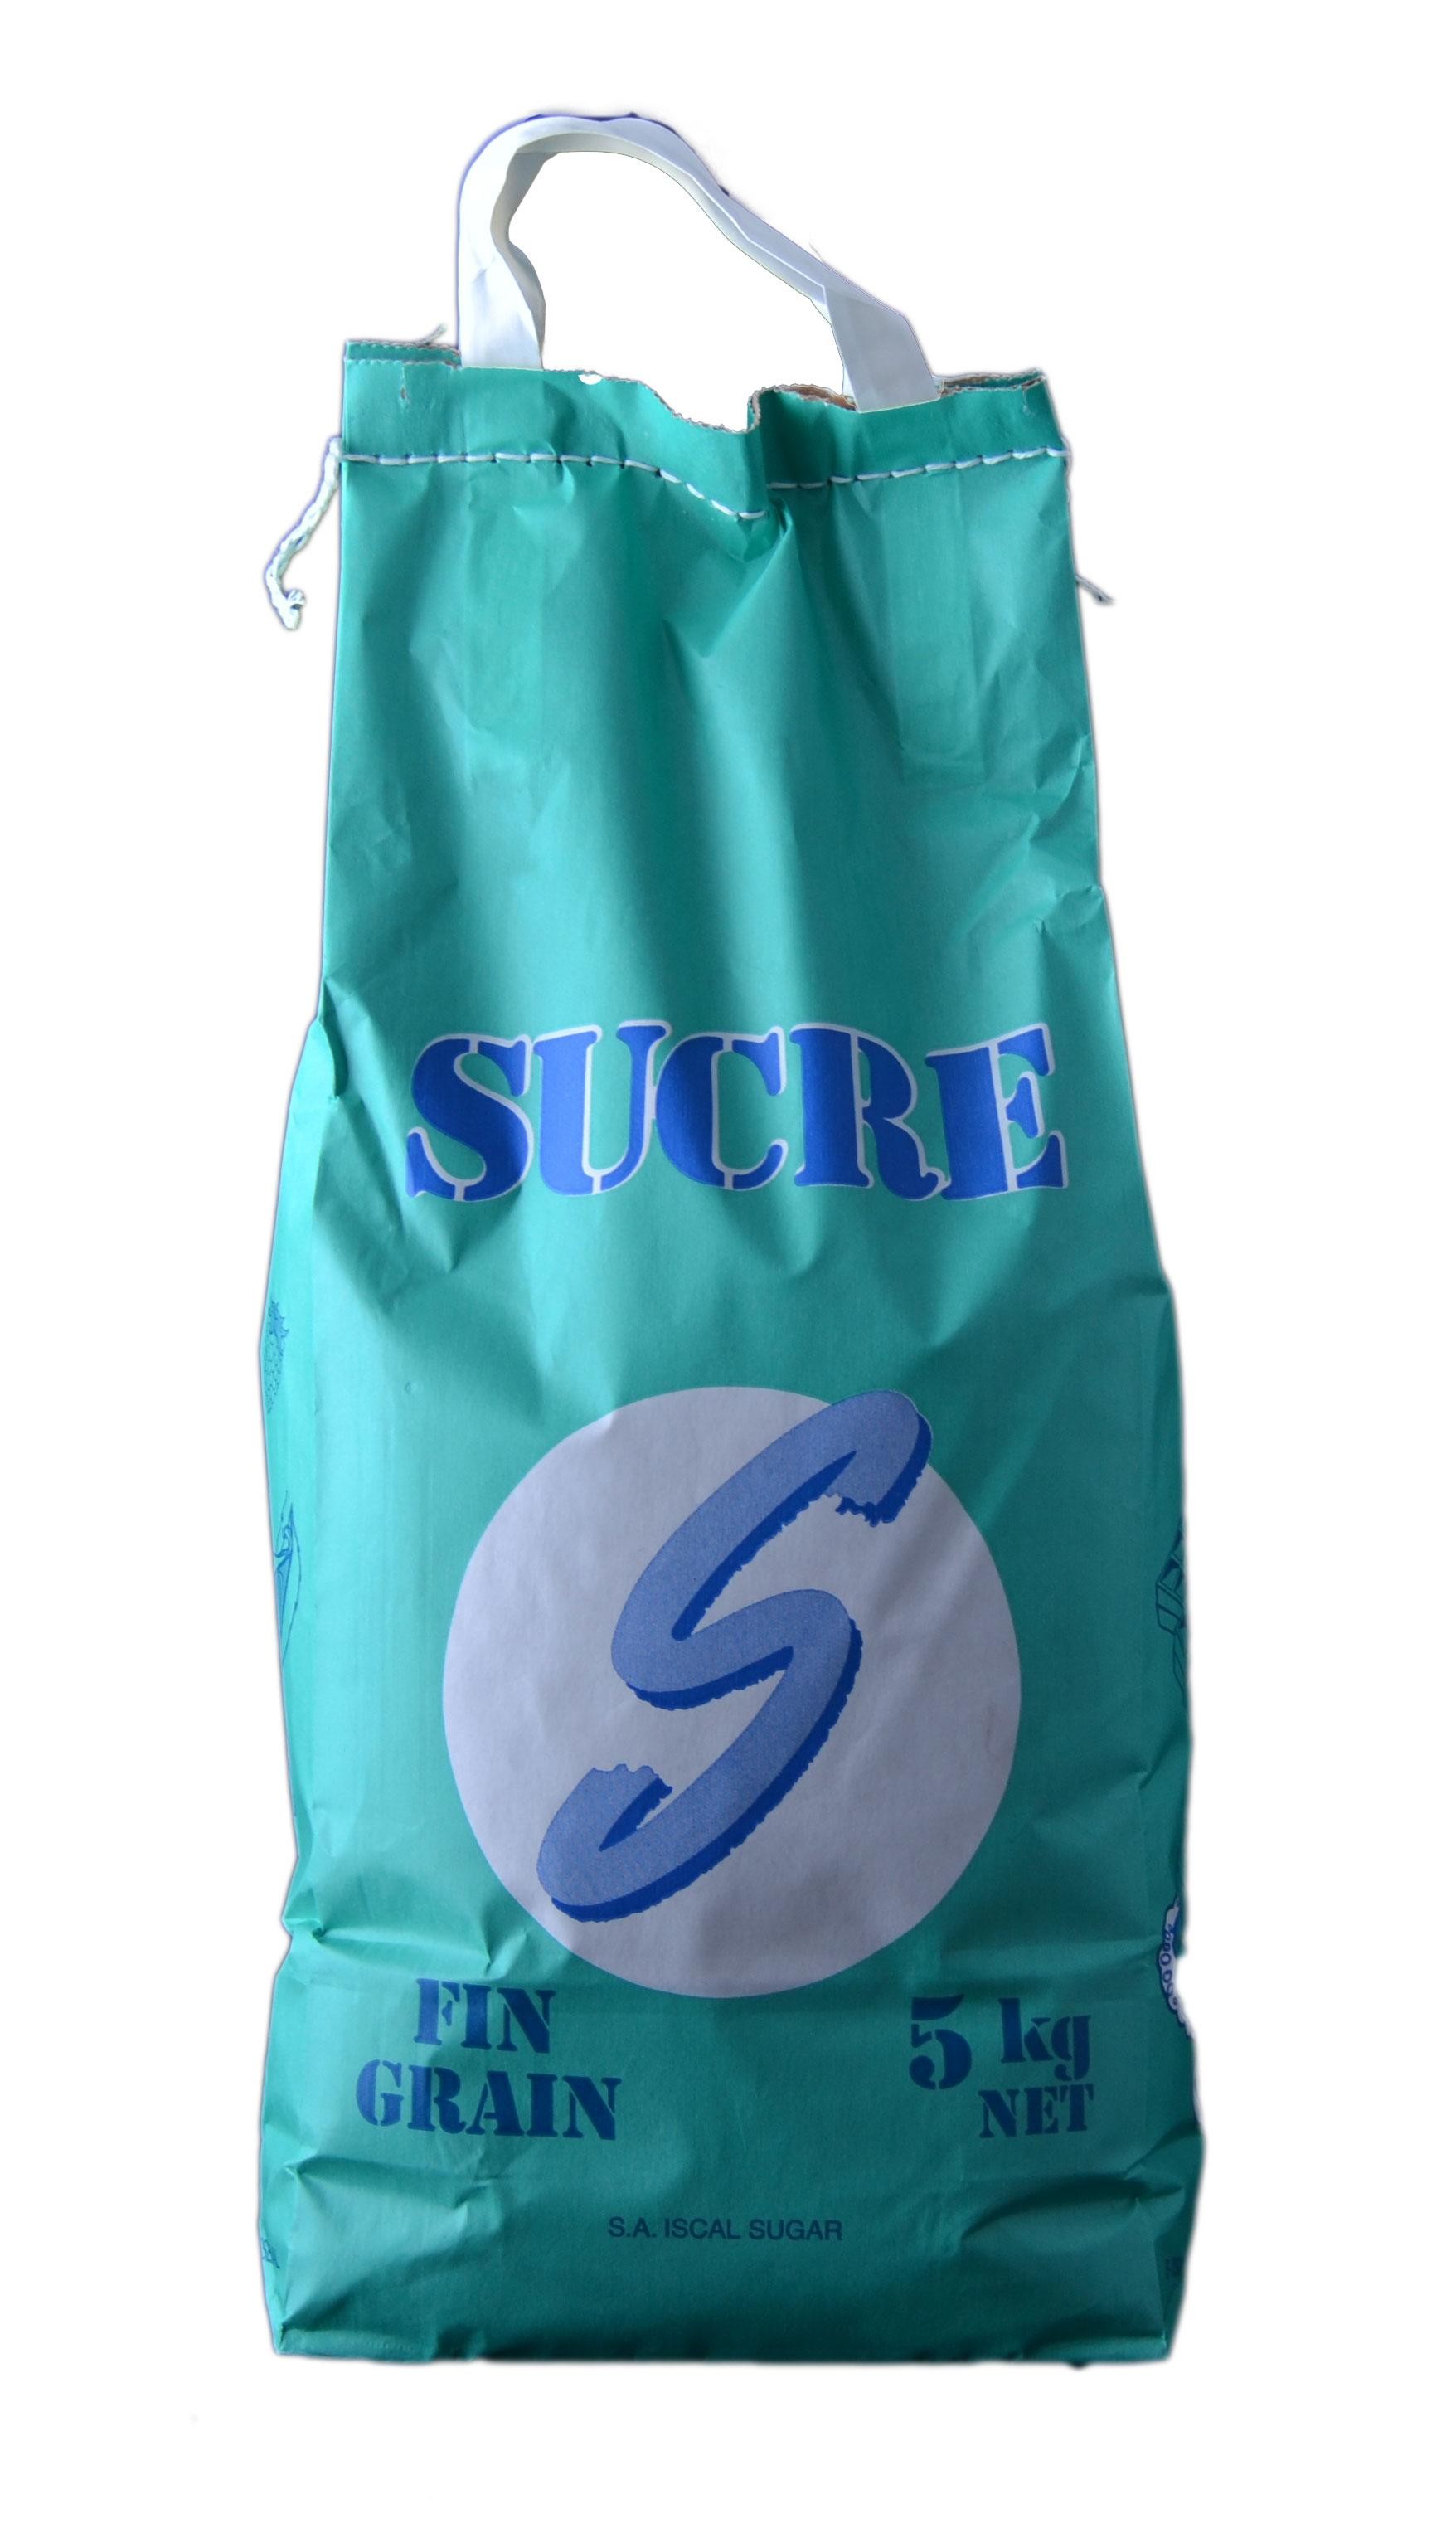 Sucre Cristallisé  5kg Iscal Sugar